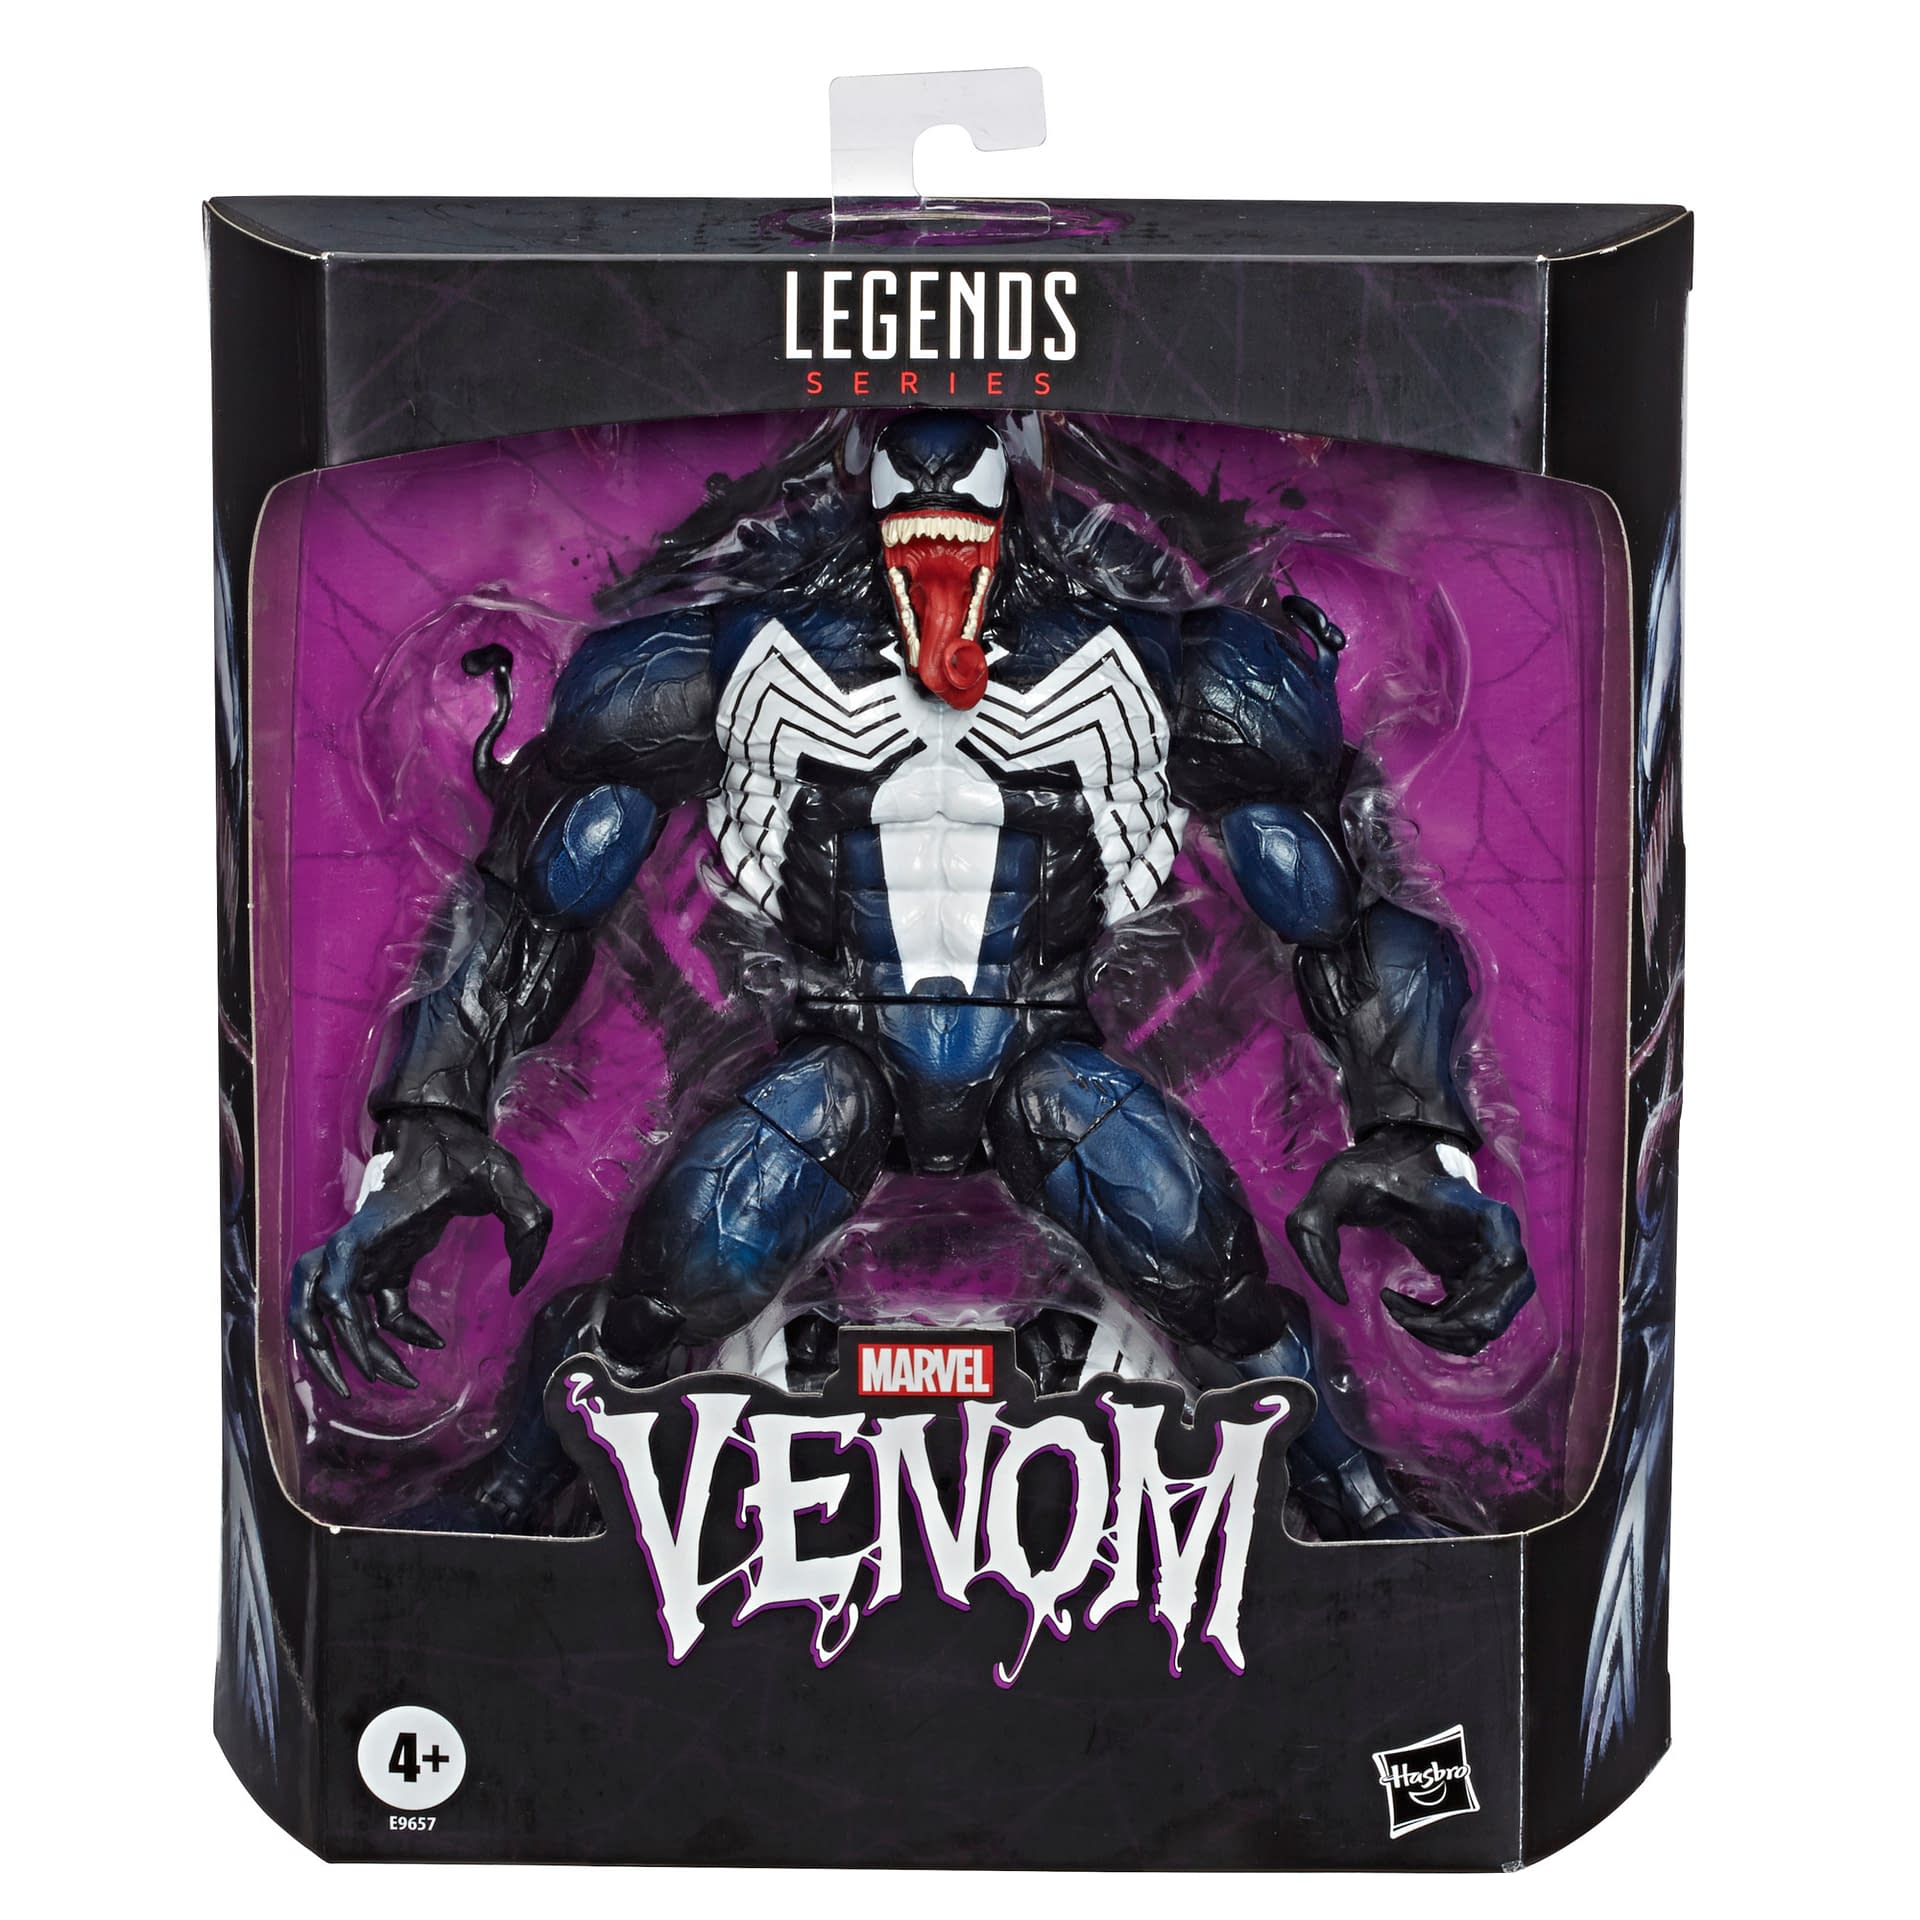 Venom is Back with New Marvel Legends BAF Single Release